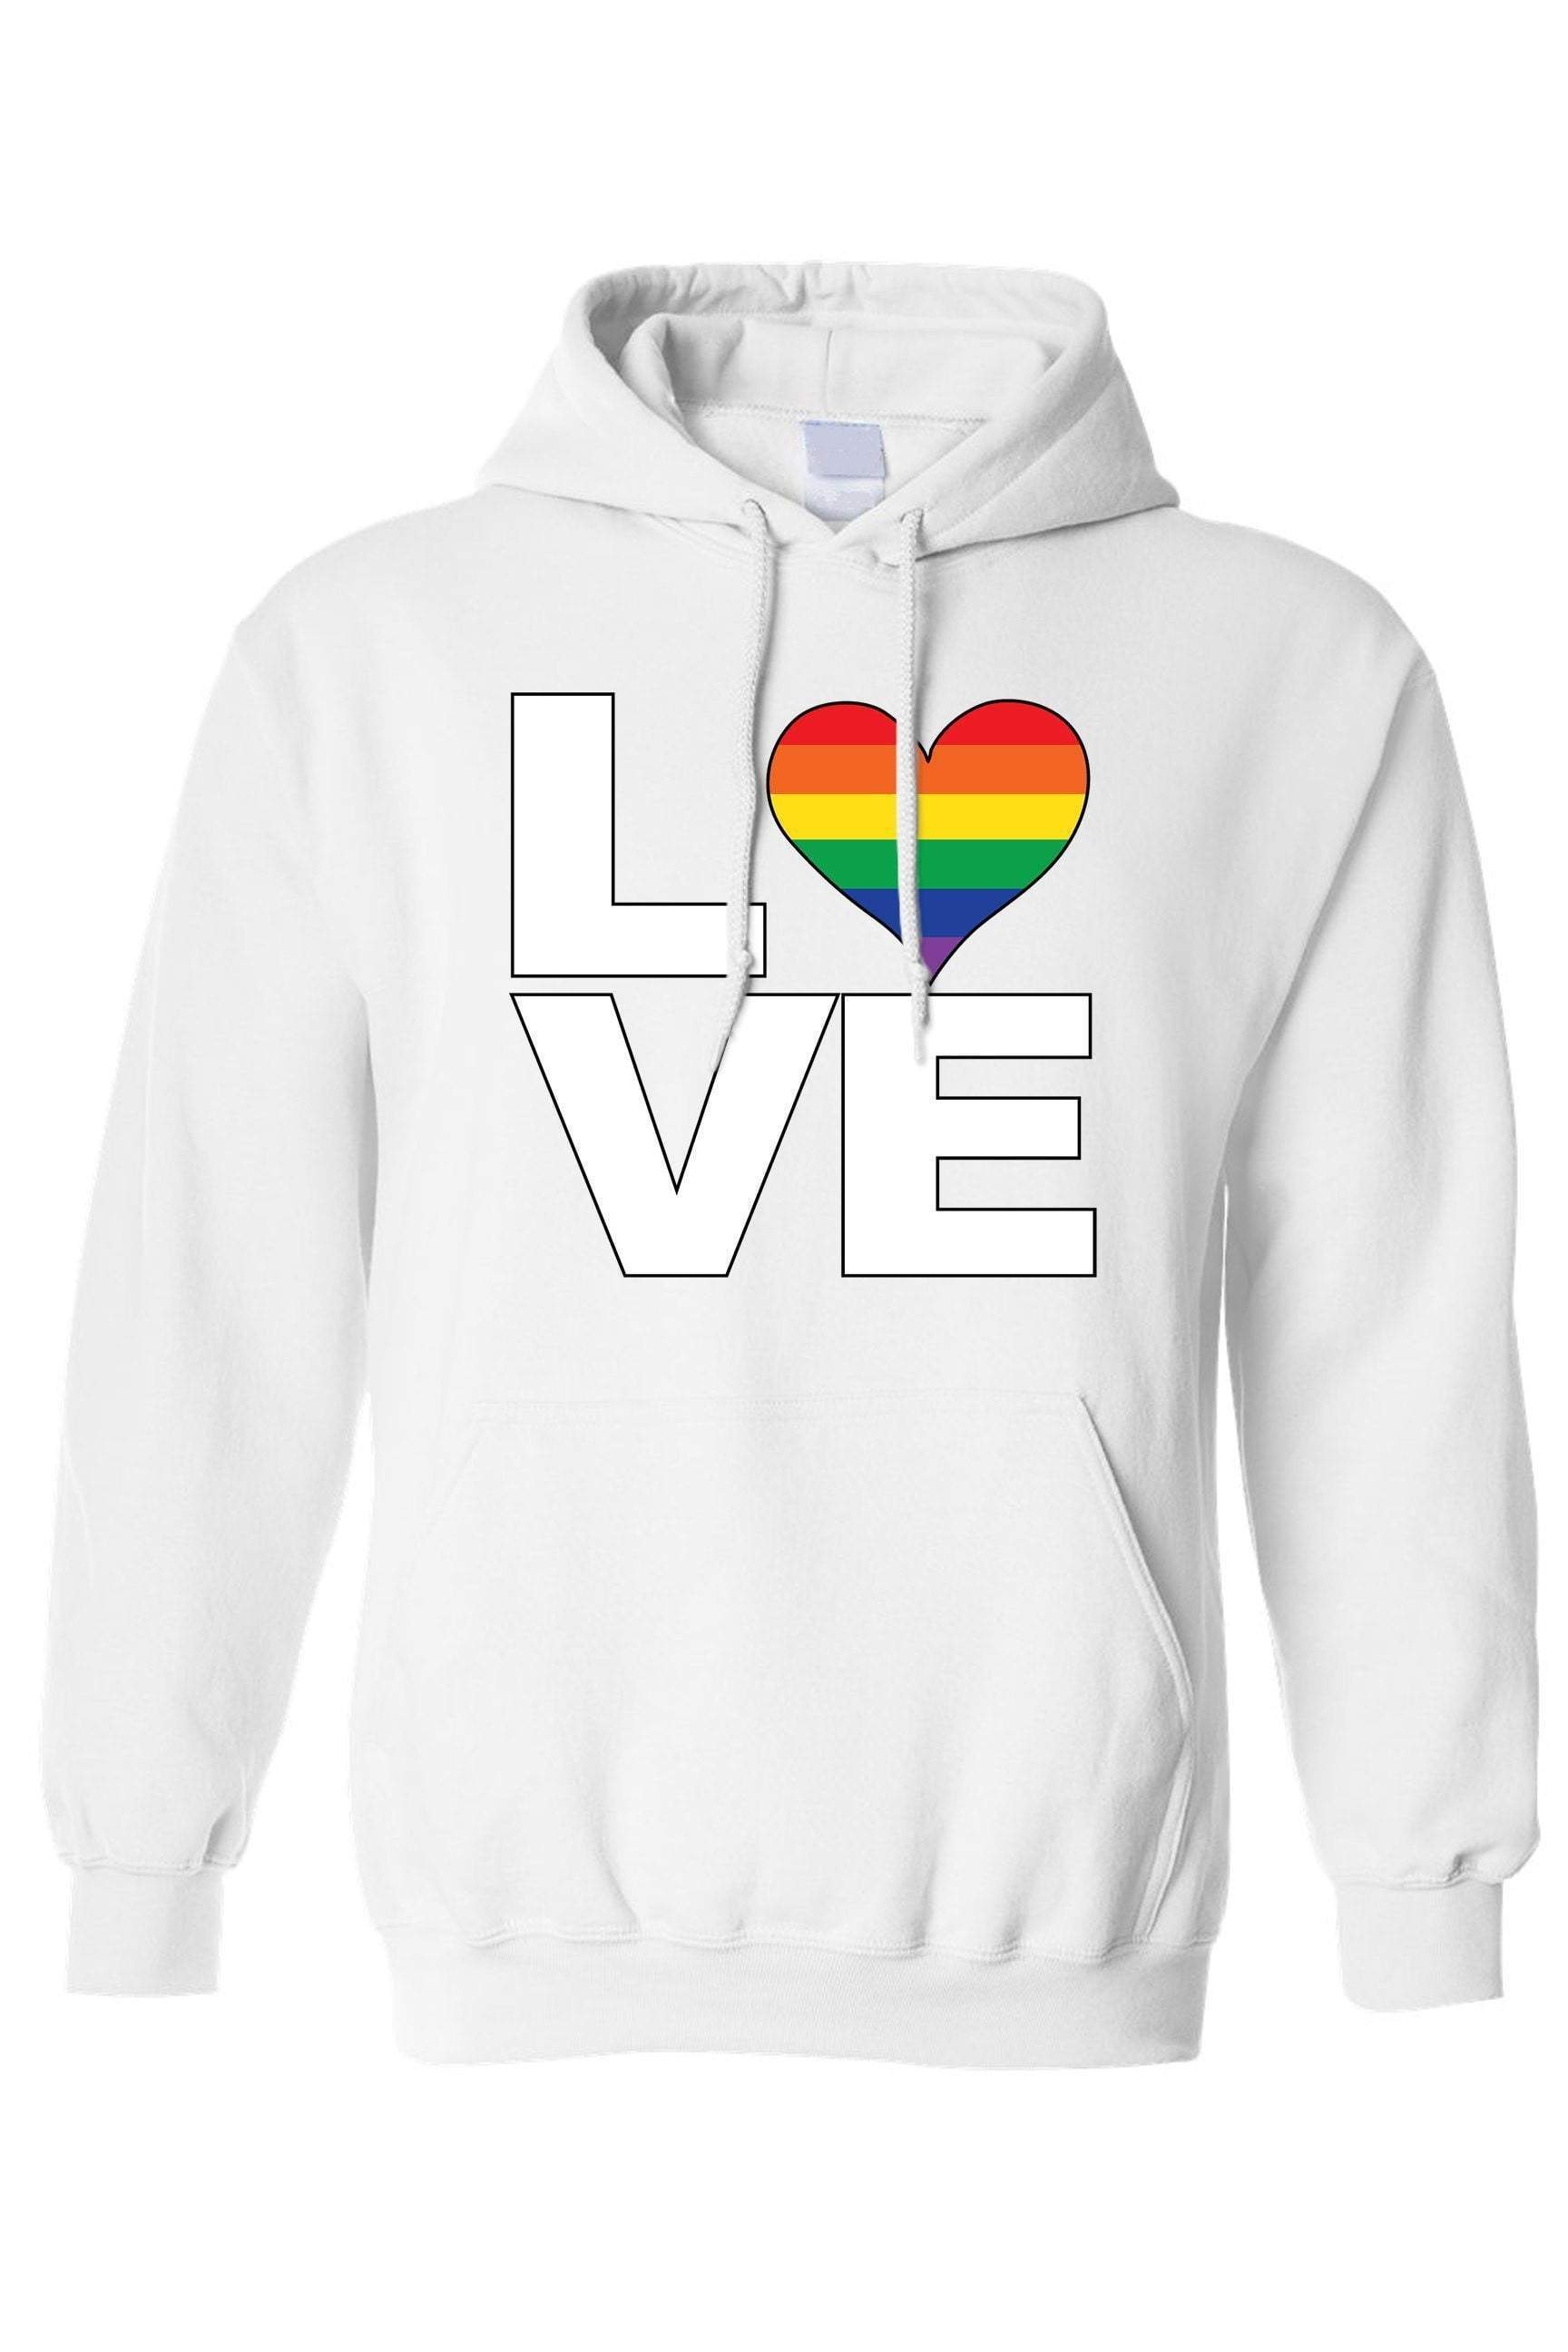 Unisex Pullover Hoodie LGBT "Rainbow Flag Gay love Pride!"